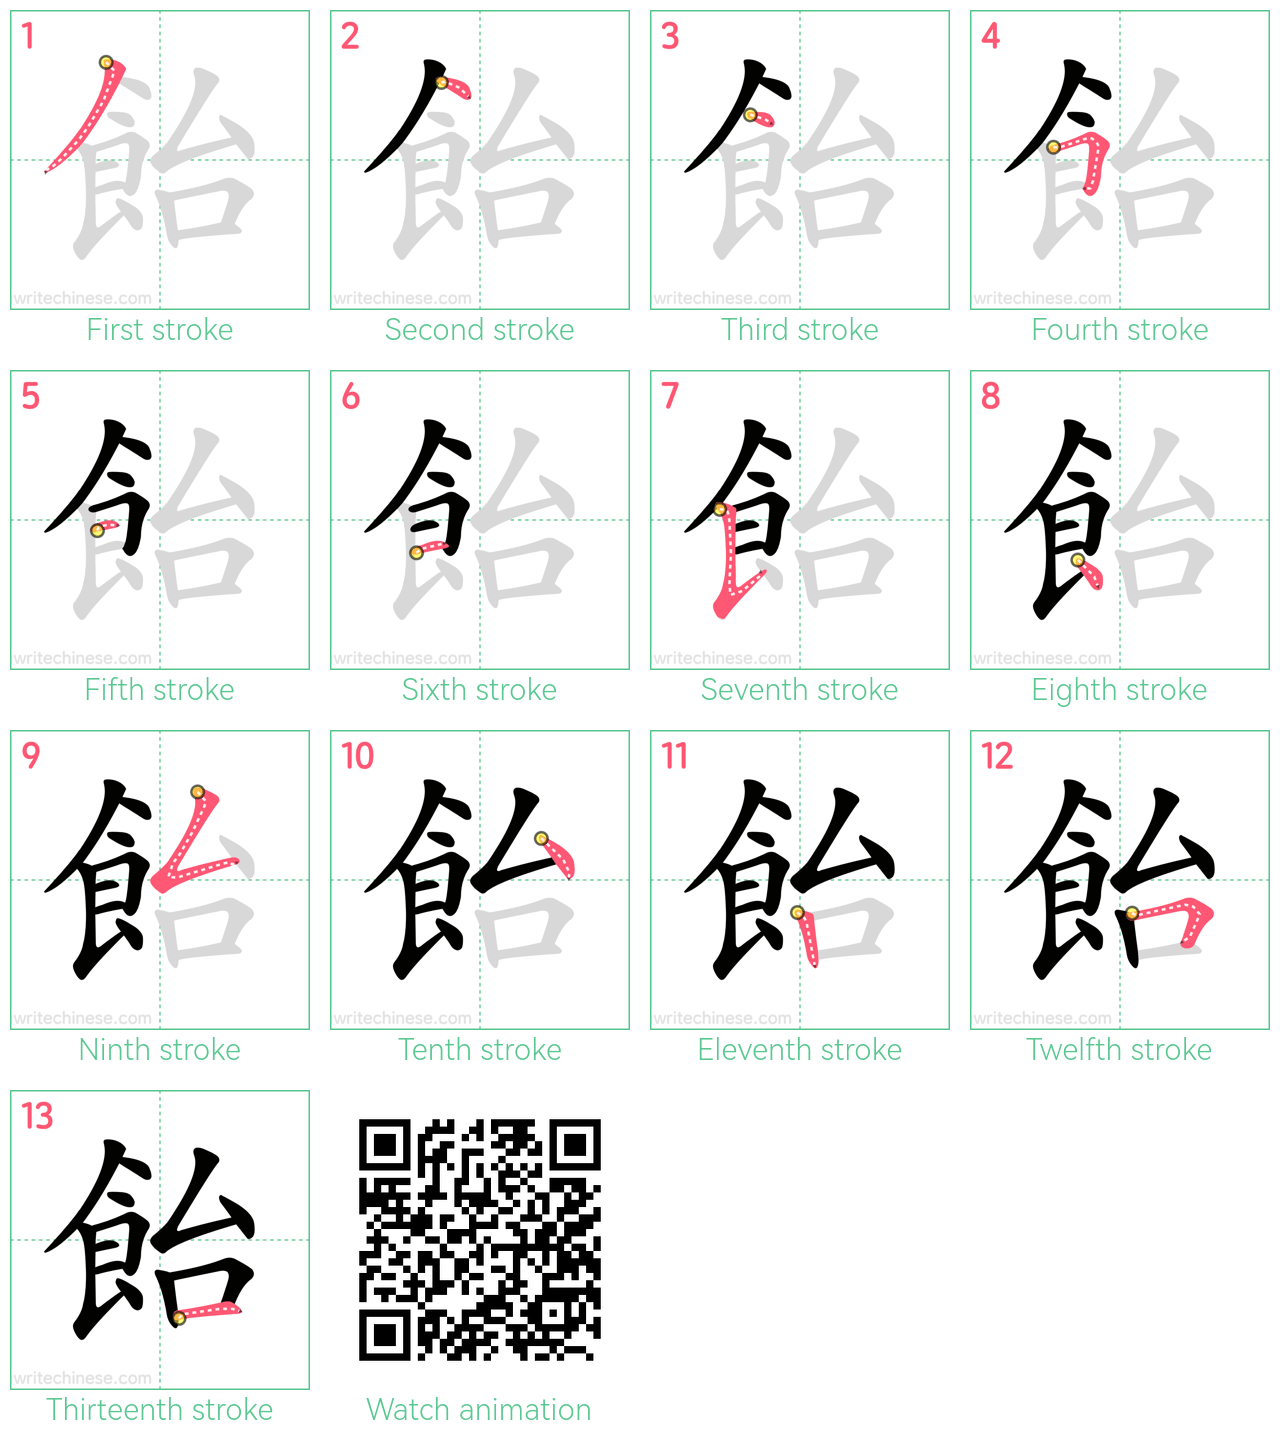 飴 step-by-step stroke order diagrams